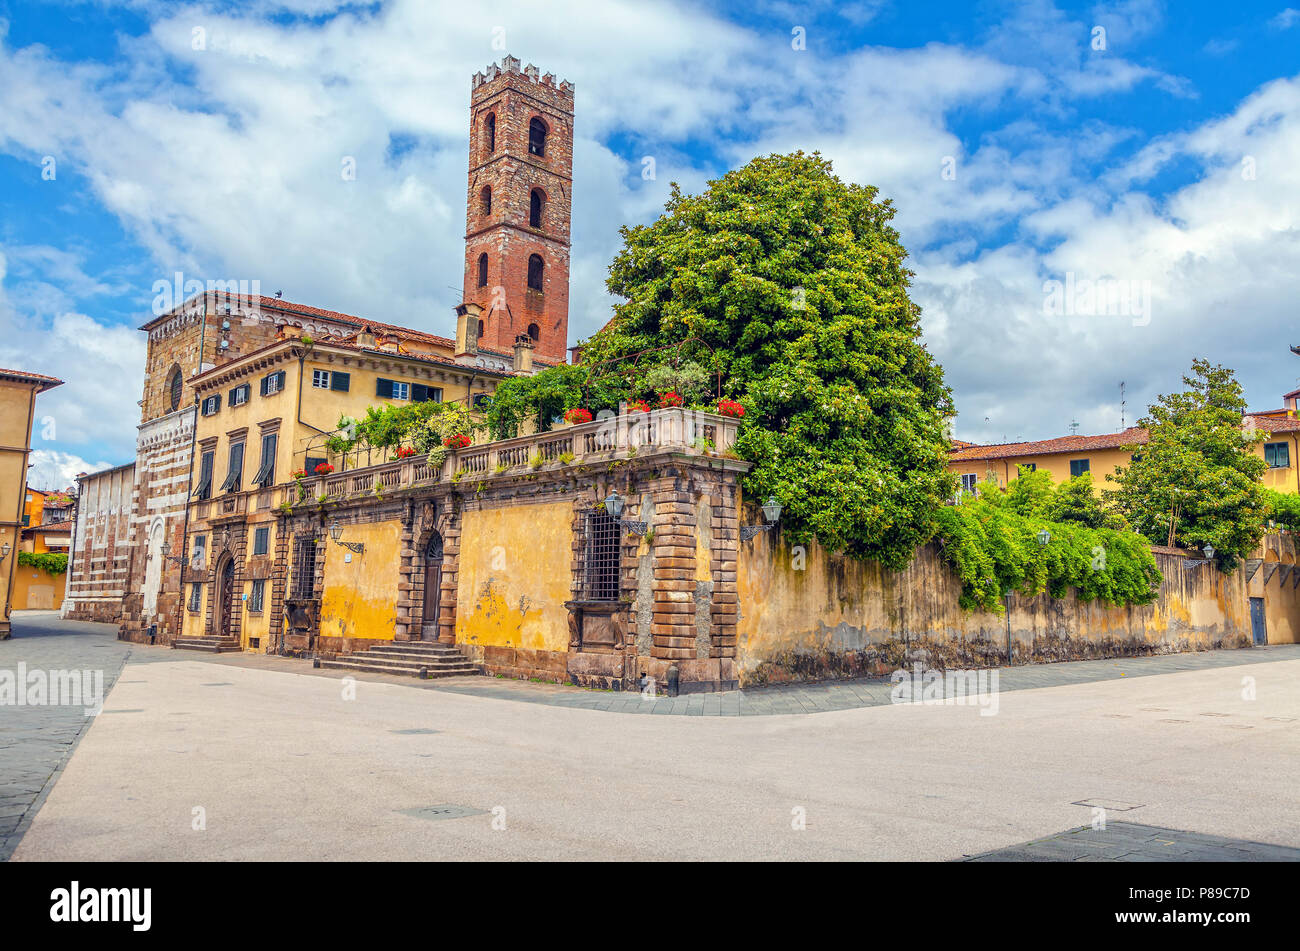 La piazza di San Martino nella antica città italiana di Lucca. Foto Stock